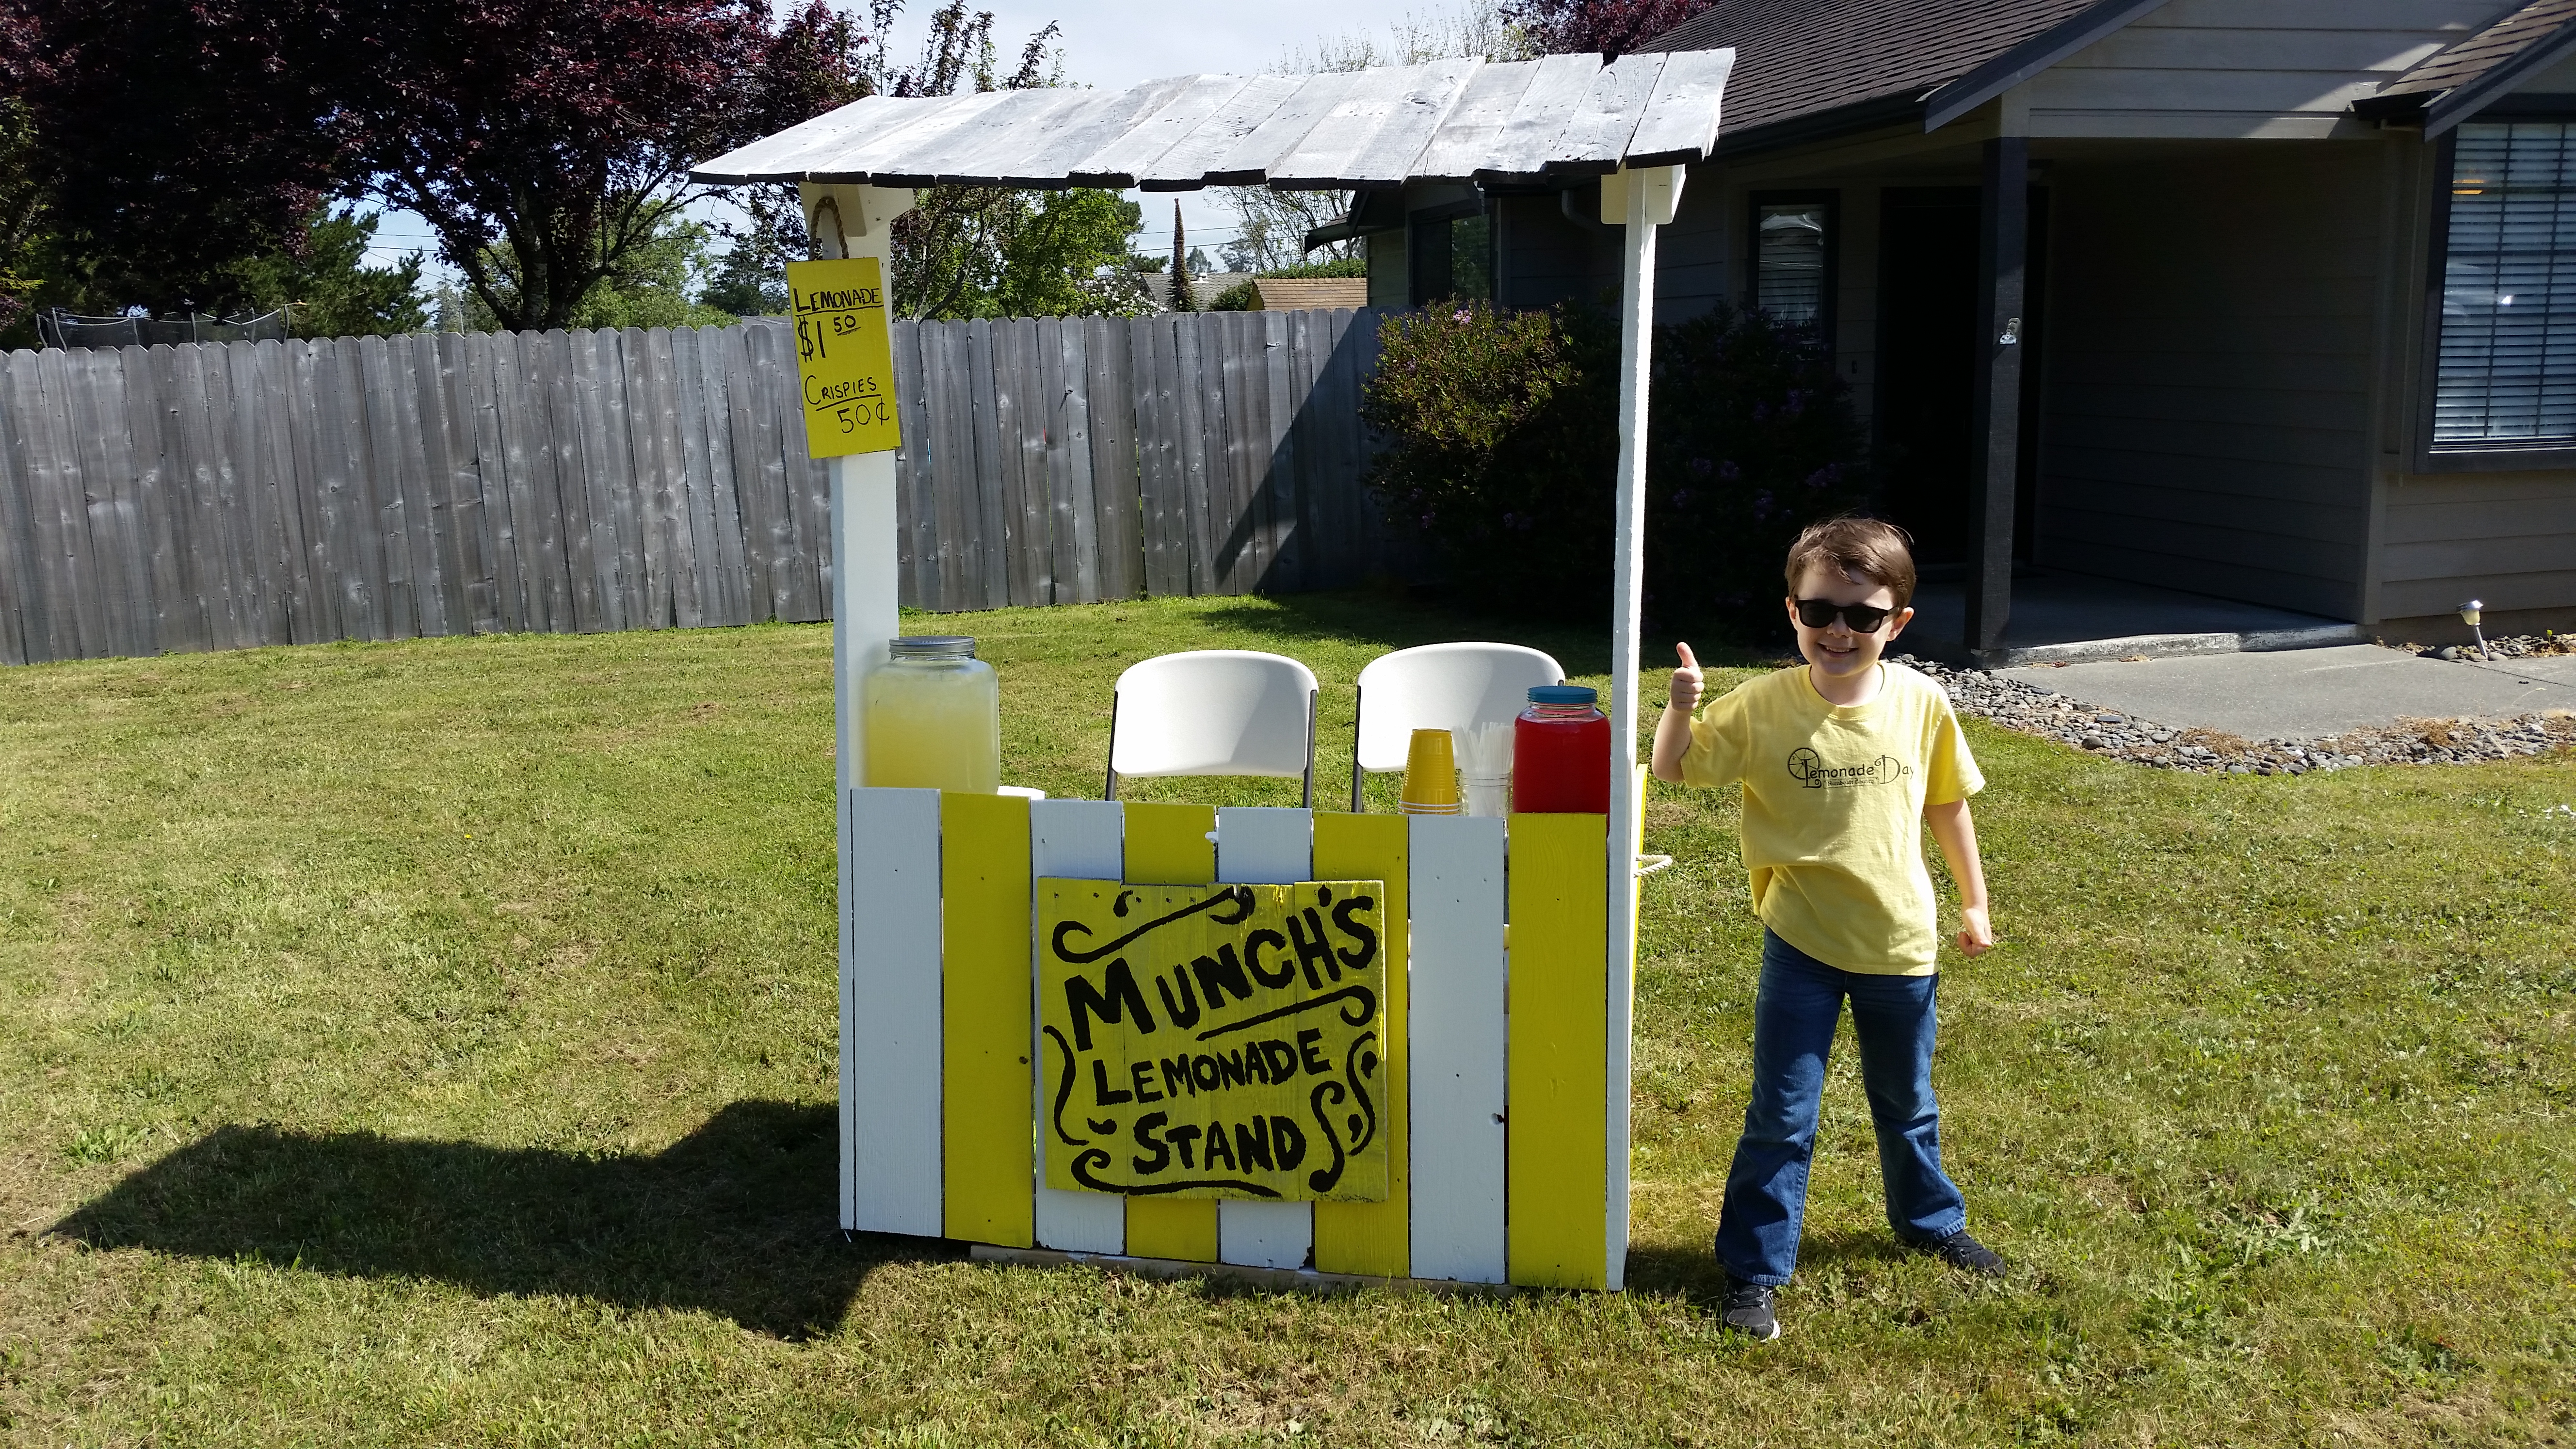 Munch's Lemonade Stand